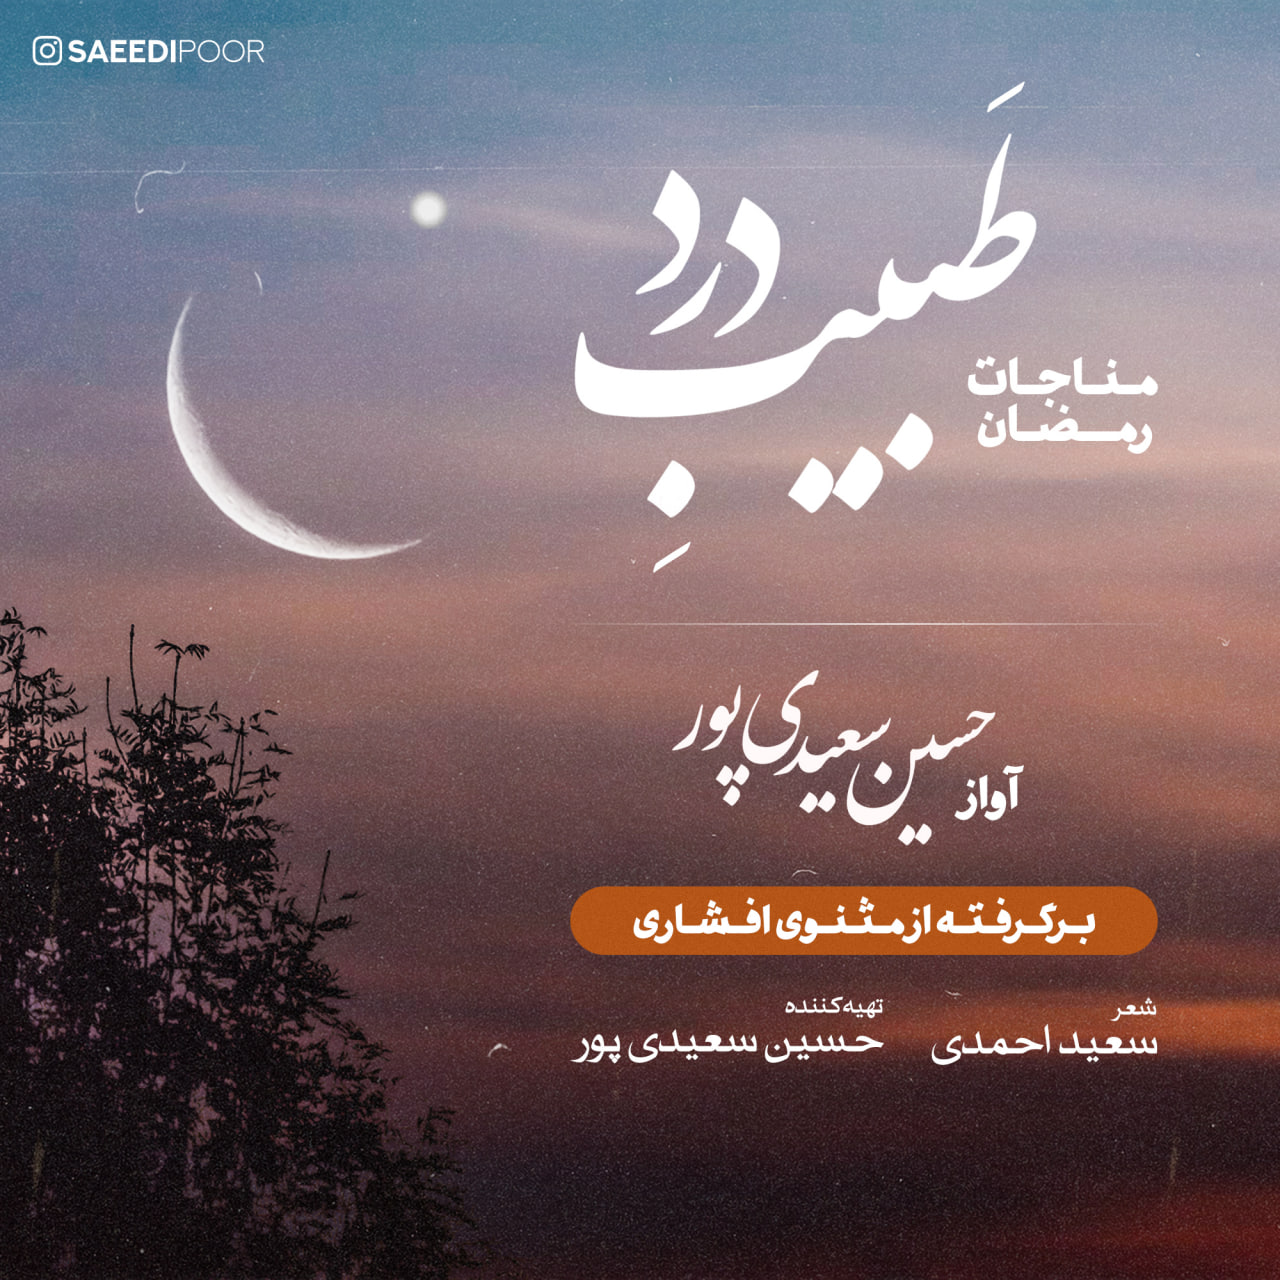 دانلود آهنگ جدید حسین سعیدی پور به نام طبیب درد ( مناجات رمضان )